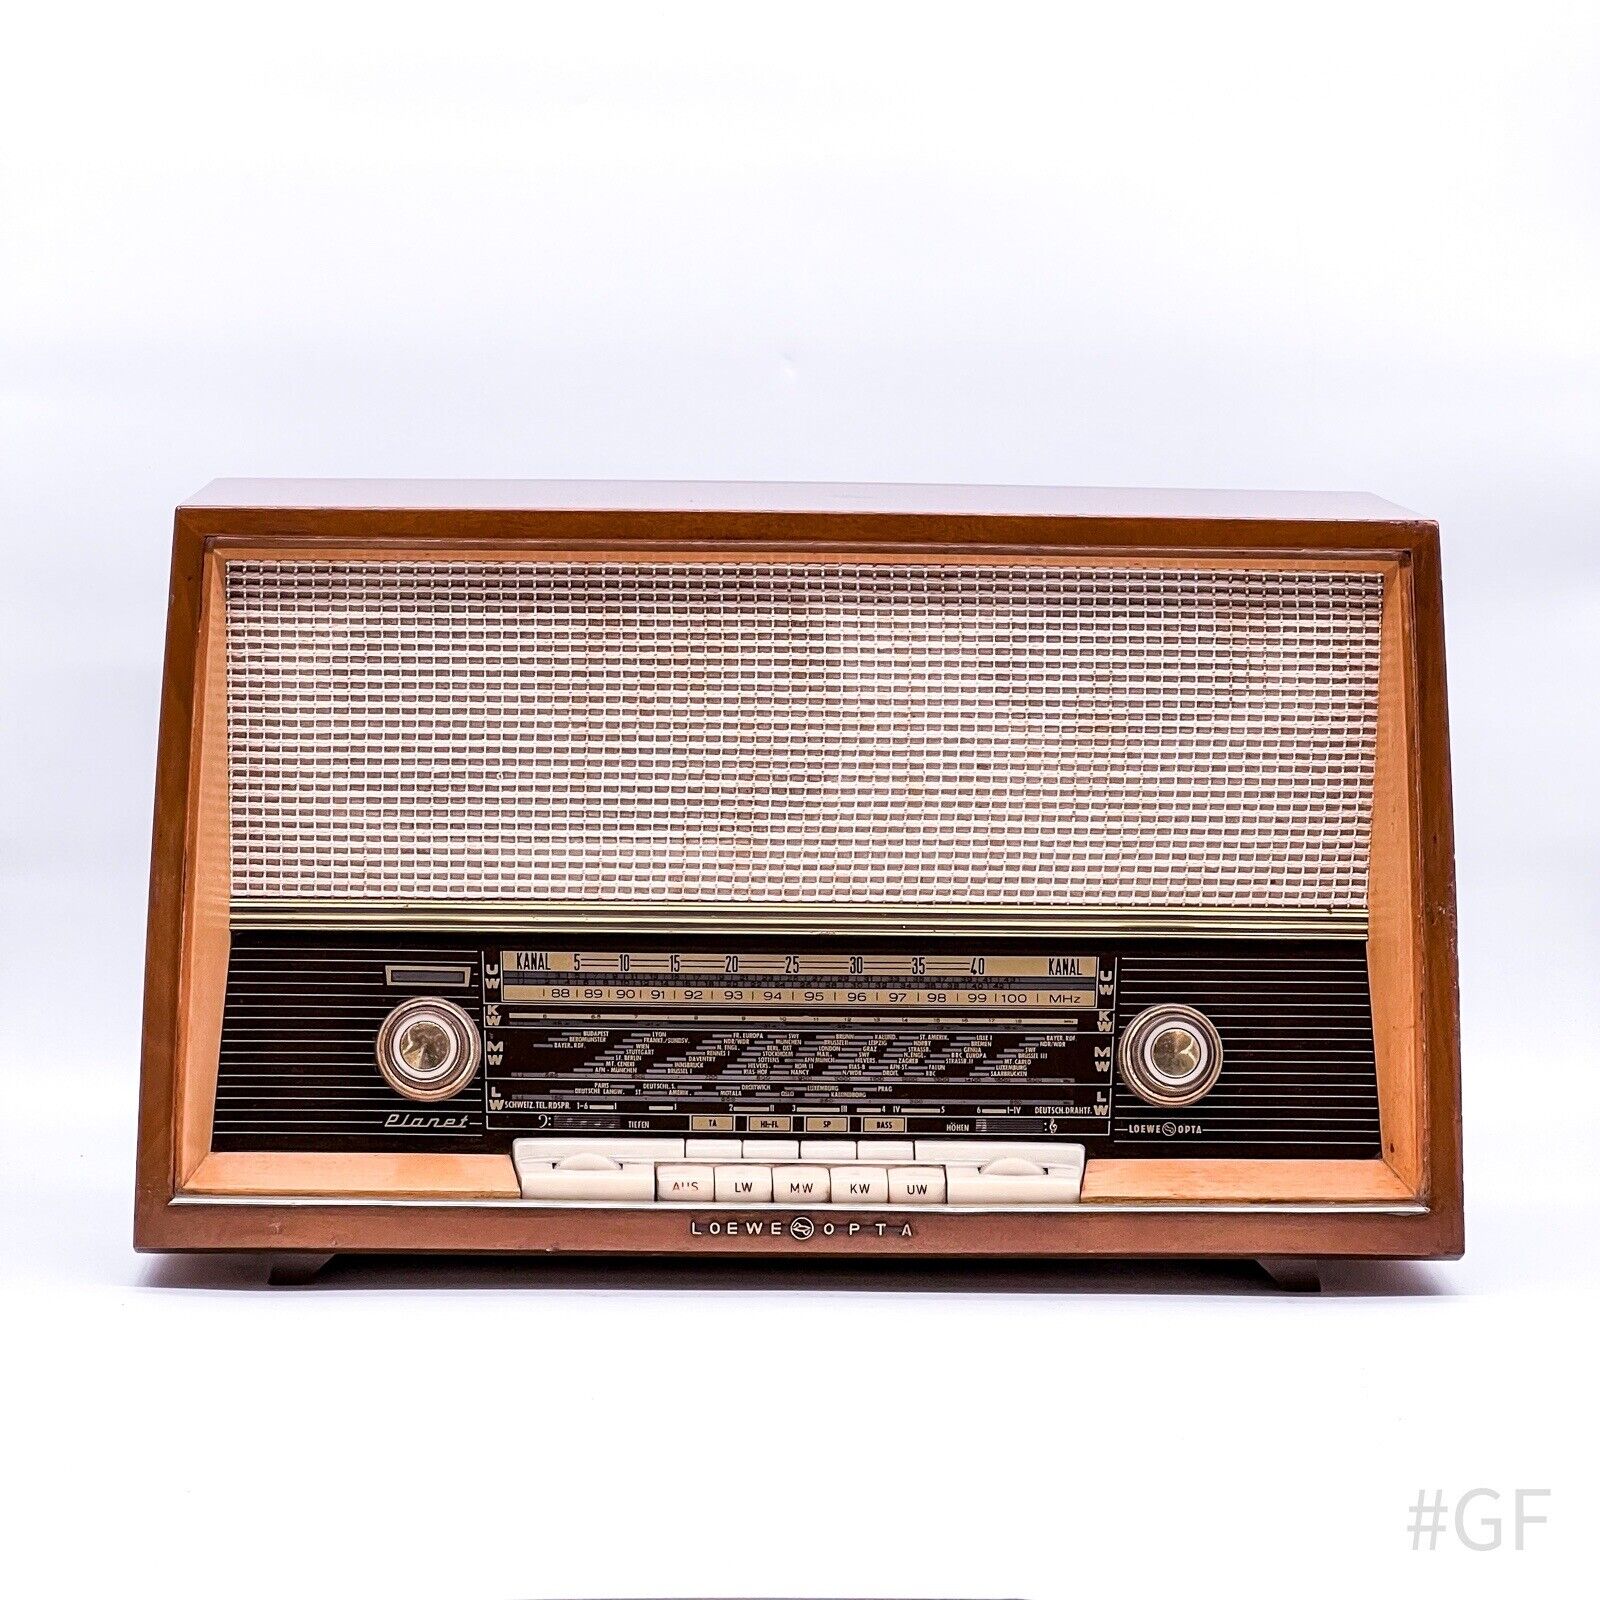 Vintage Loewe Opta Planet Tube Radio Type 6740W 60s Made in W. Germany